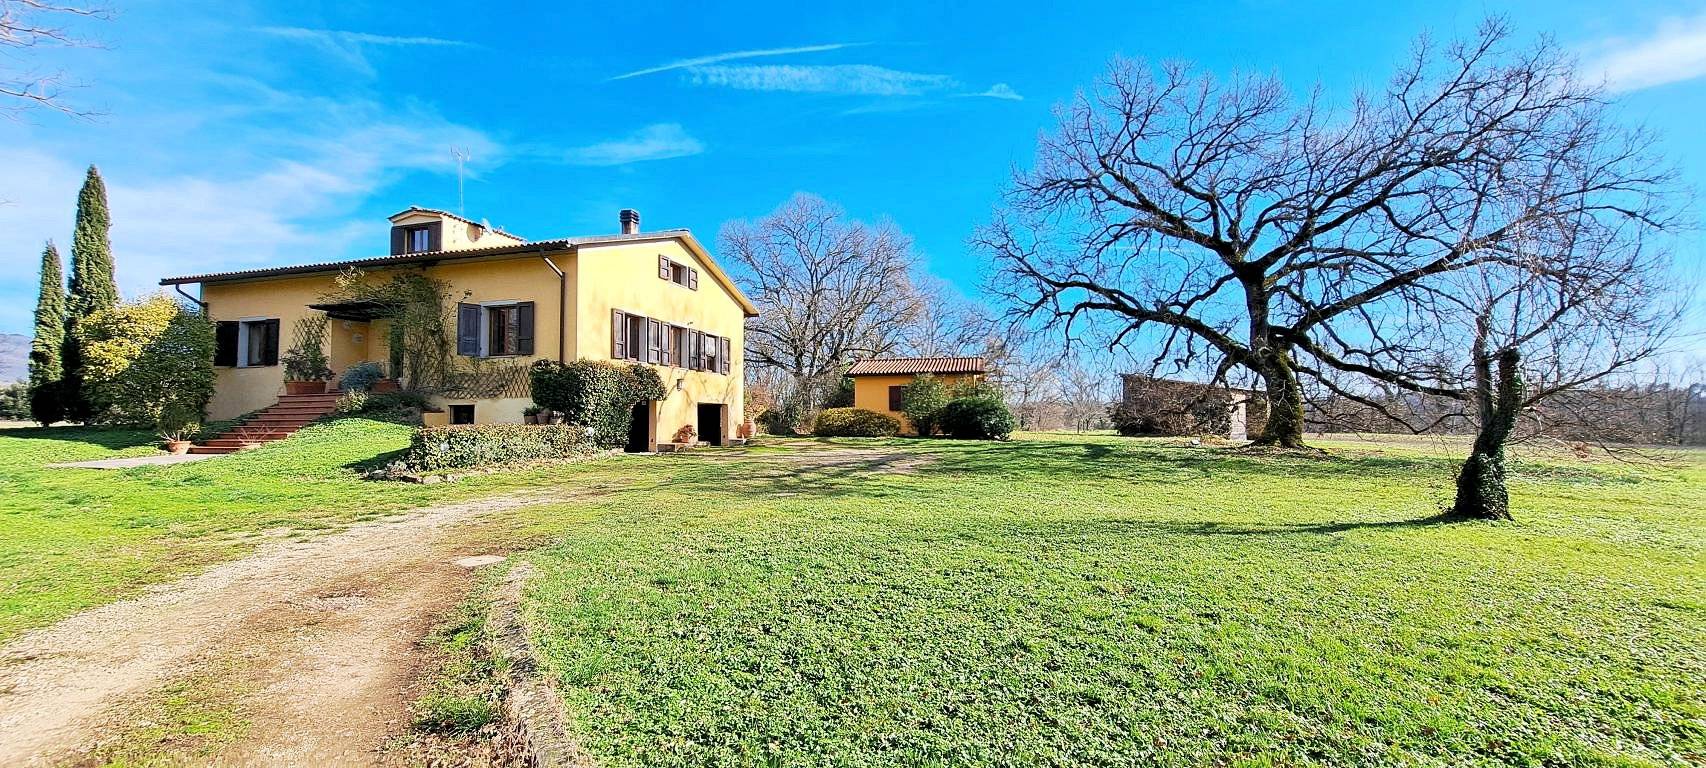 Villa in vendita a Terranuova Bracciolini, 7 locali, prezzo € 560.000 | PortaleAgenzieImmobiliari.it